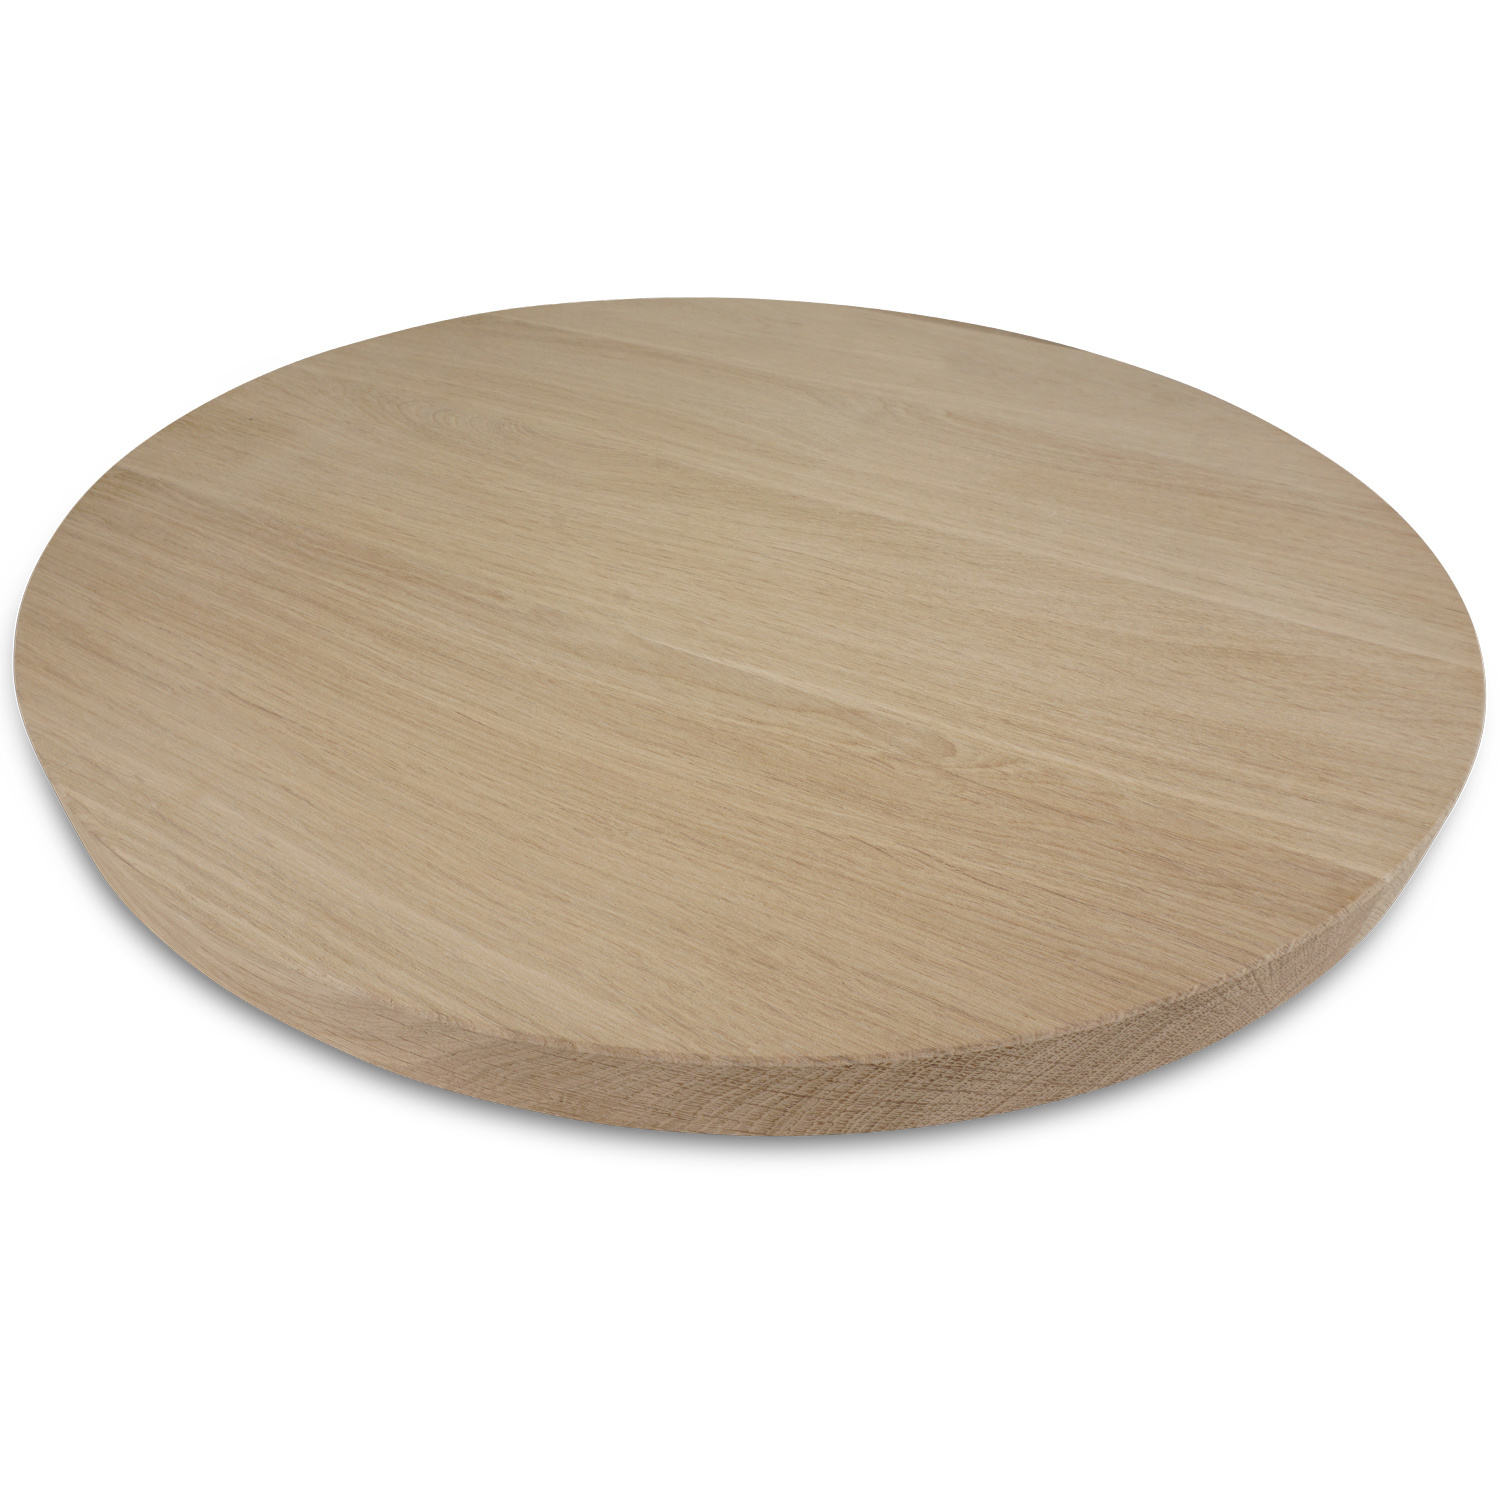  Tischplatte Eiche rund - 4 cm dick (1-Schicht) - Breite Lamellen (10 - 12 cm breit) - Eichenholz A-Qualität - verleimt & künstlich getrocknet (HF 8-12%) - verschiedene Größen